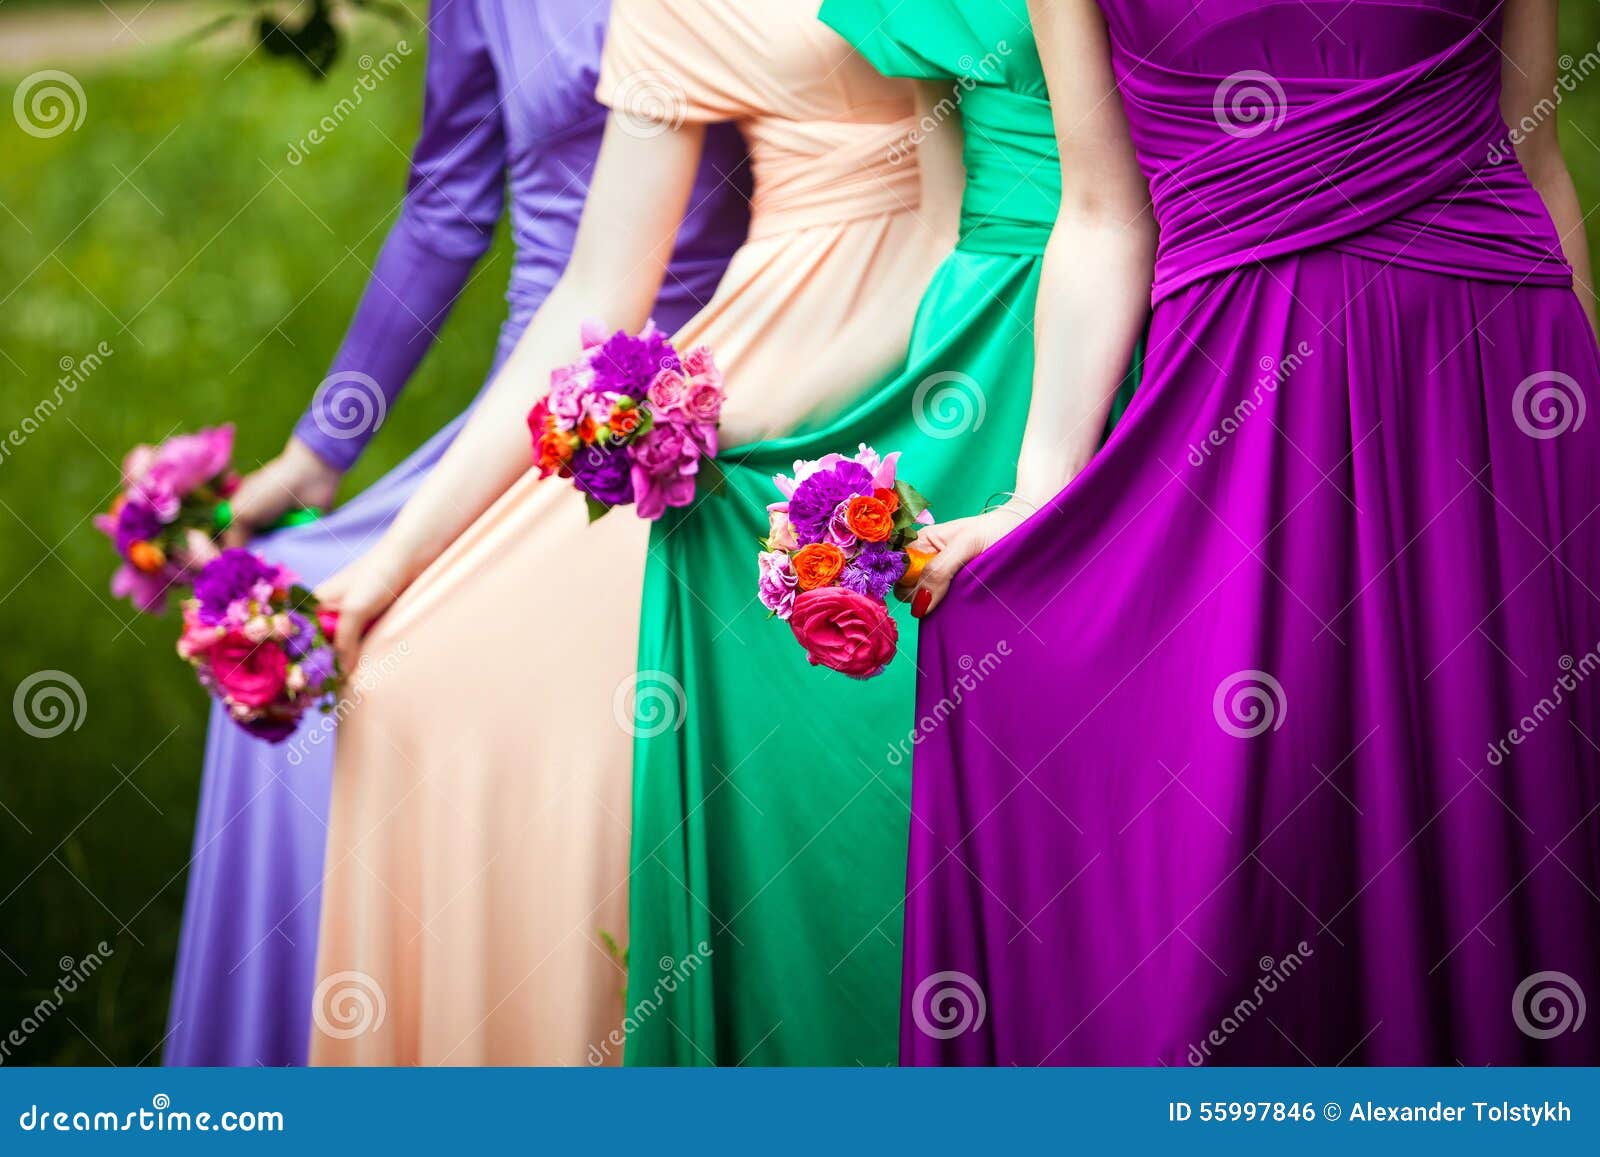 bridesmaids on wedding